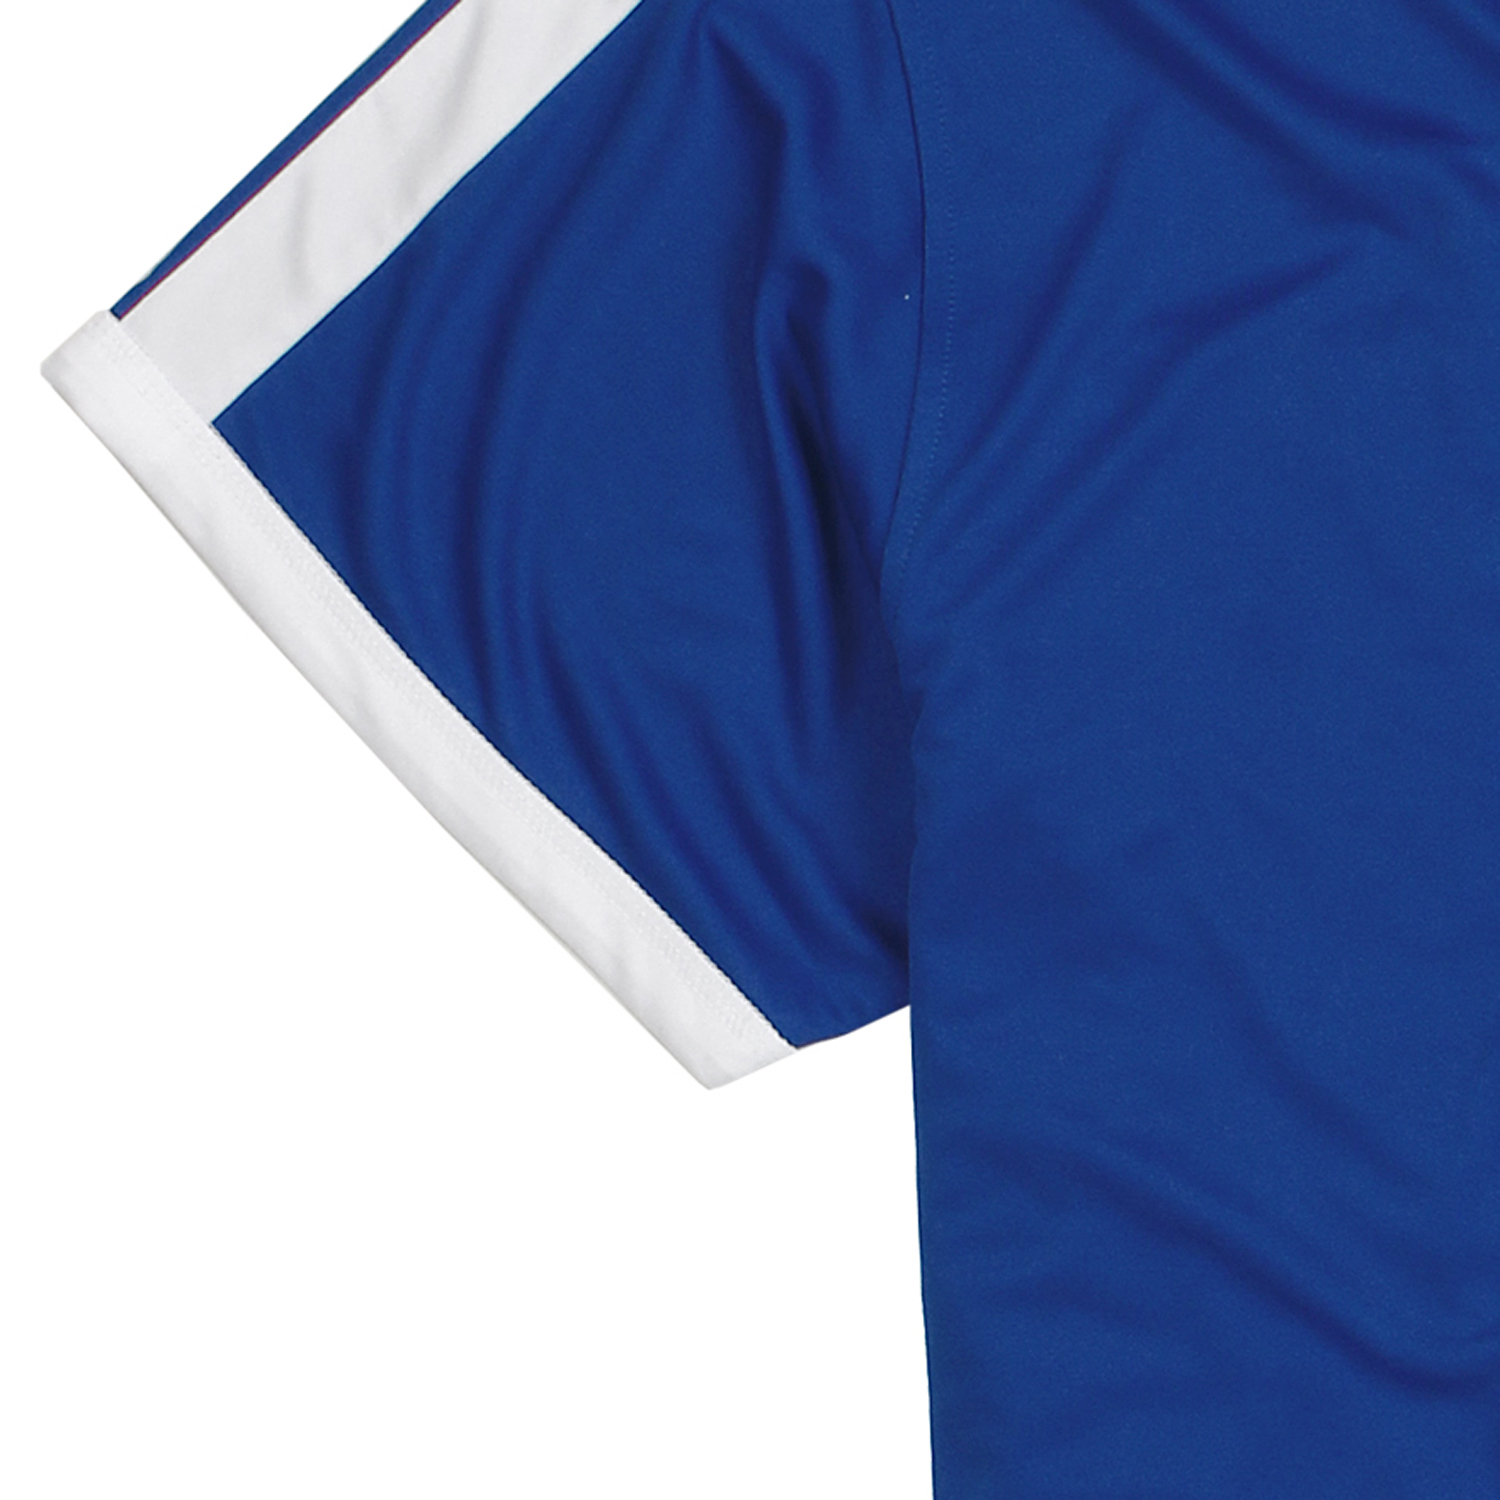 Funktionsshirt von Adamo Serie "Marco" COMFORT FIT royalblau in Übergrößen 2XL-12XL für Herren